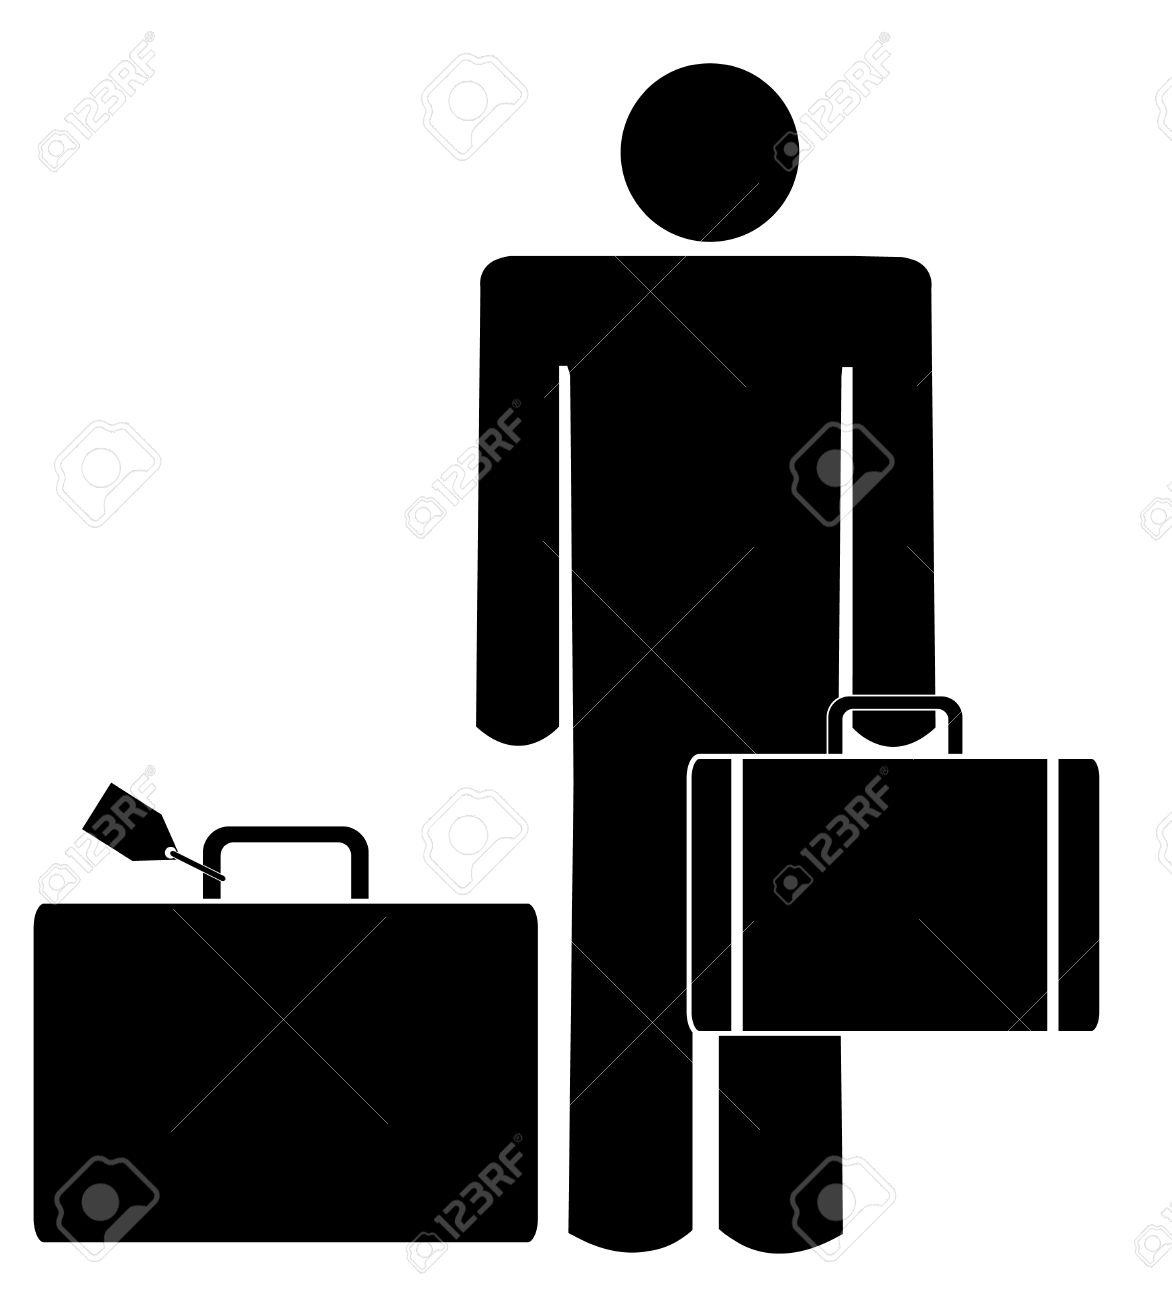 man clipart suitcase